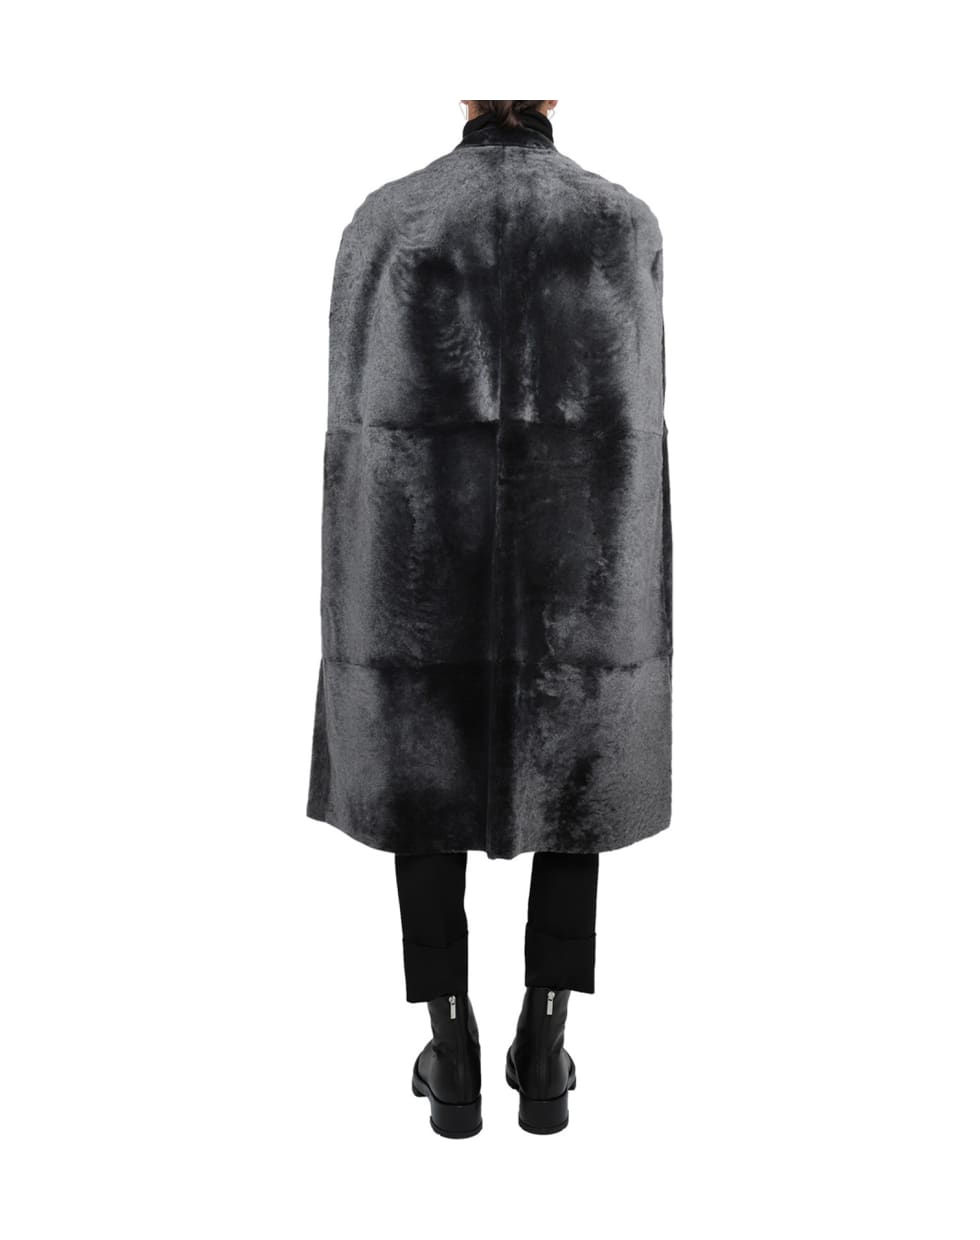 Sapio Grey 1 Shearling Coat Men - Black